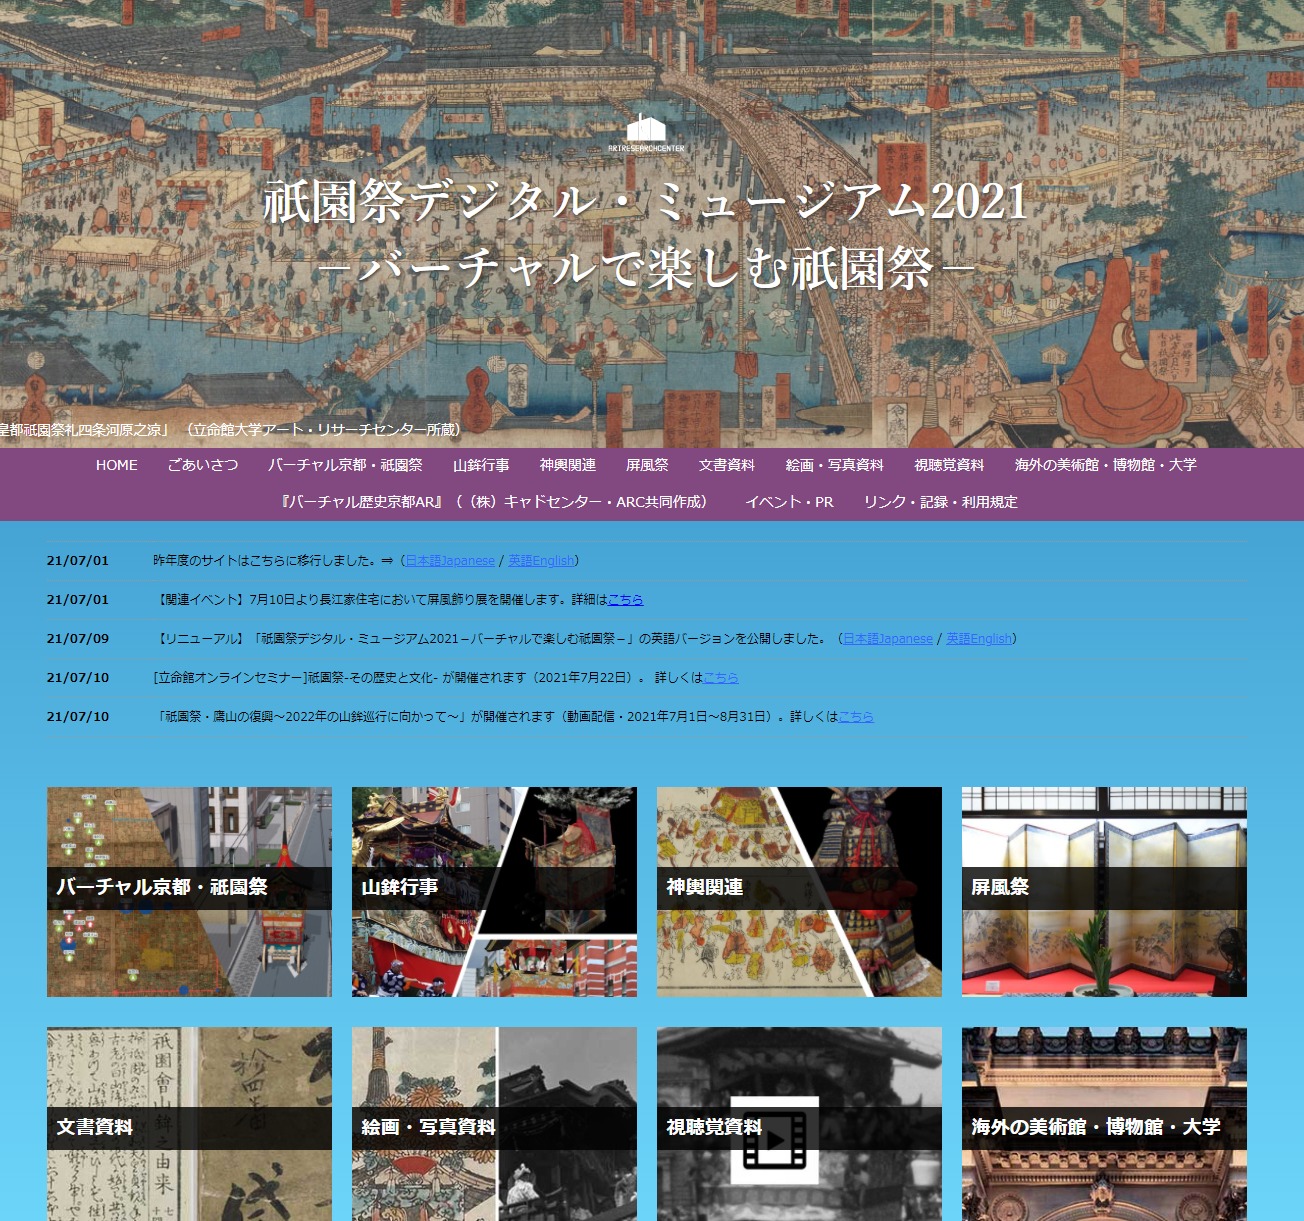 祇園祭デジタルミュージアム2021 －バーチャルで楽しむ祇園祭－